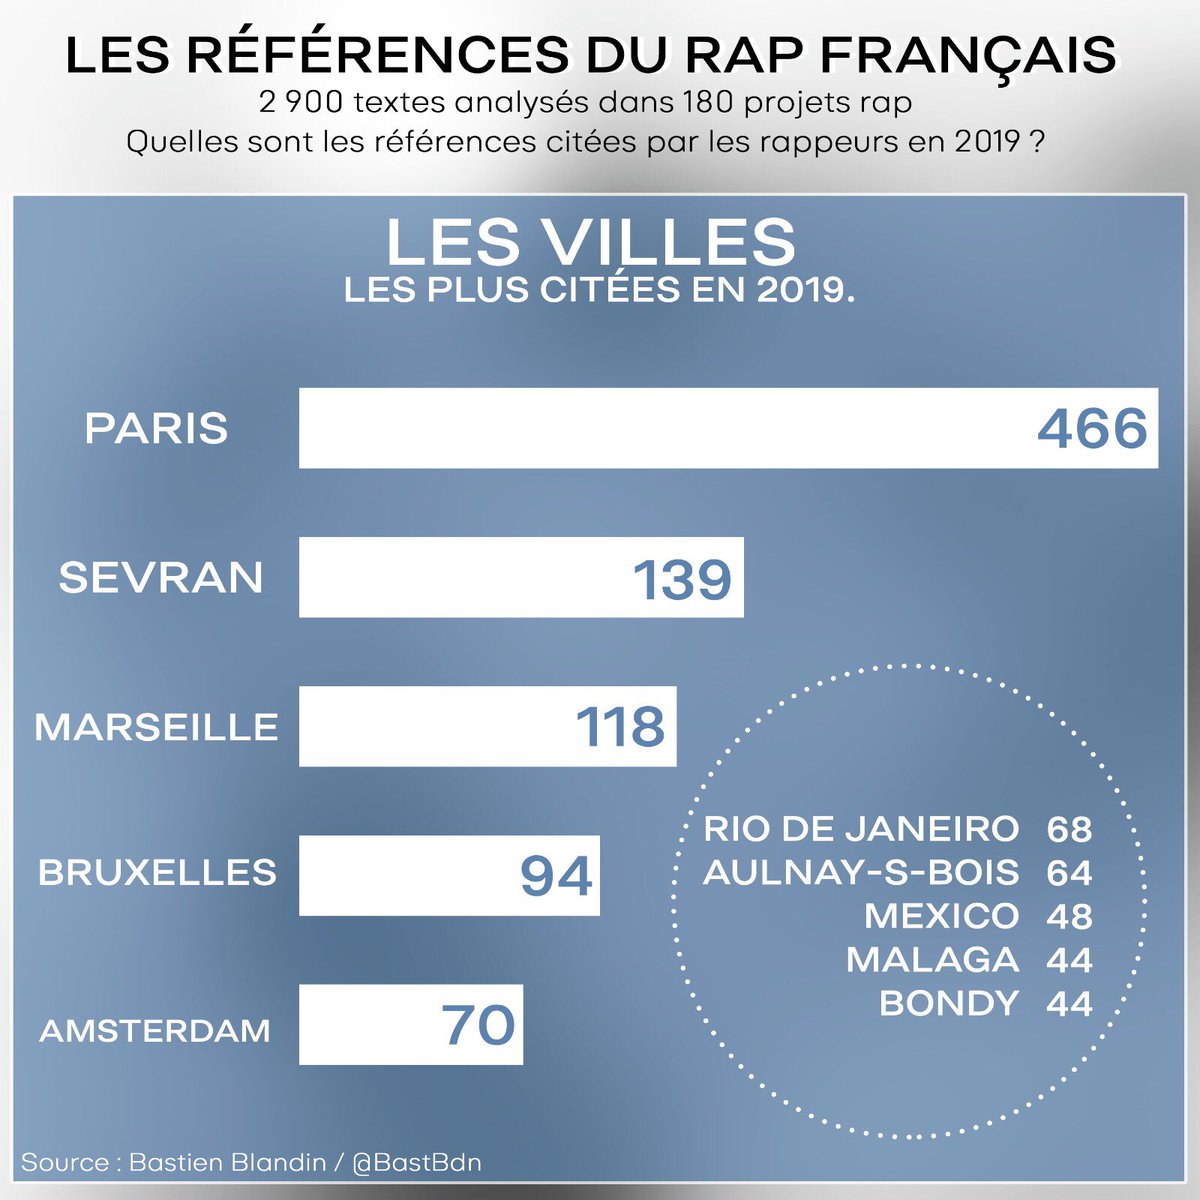 LES VILLESLa ville d’origine : le chauvinisme des rappeurs français. Ainsi, Paris est la référence la plus citée en 2019, et apparaît dans 107 projets.Si Sevran, Marseille et Bruxelles viennent ensuite, c’est simplement car ce sont les terres de nos rappeurs. (OUH OH !!)